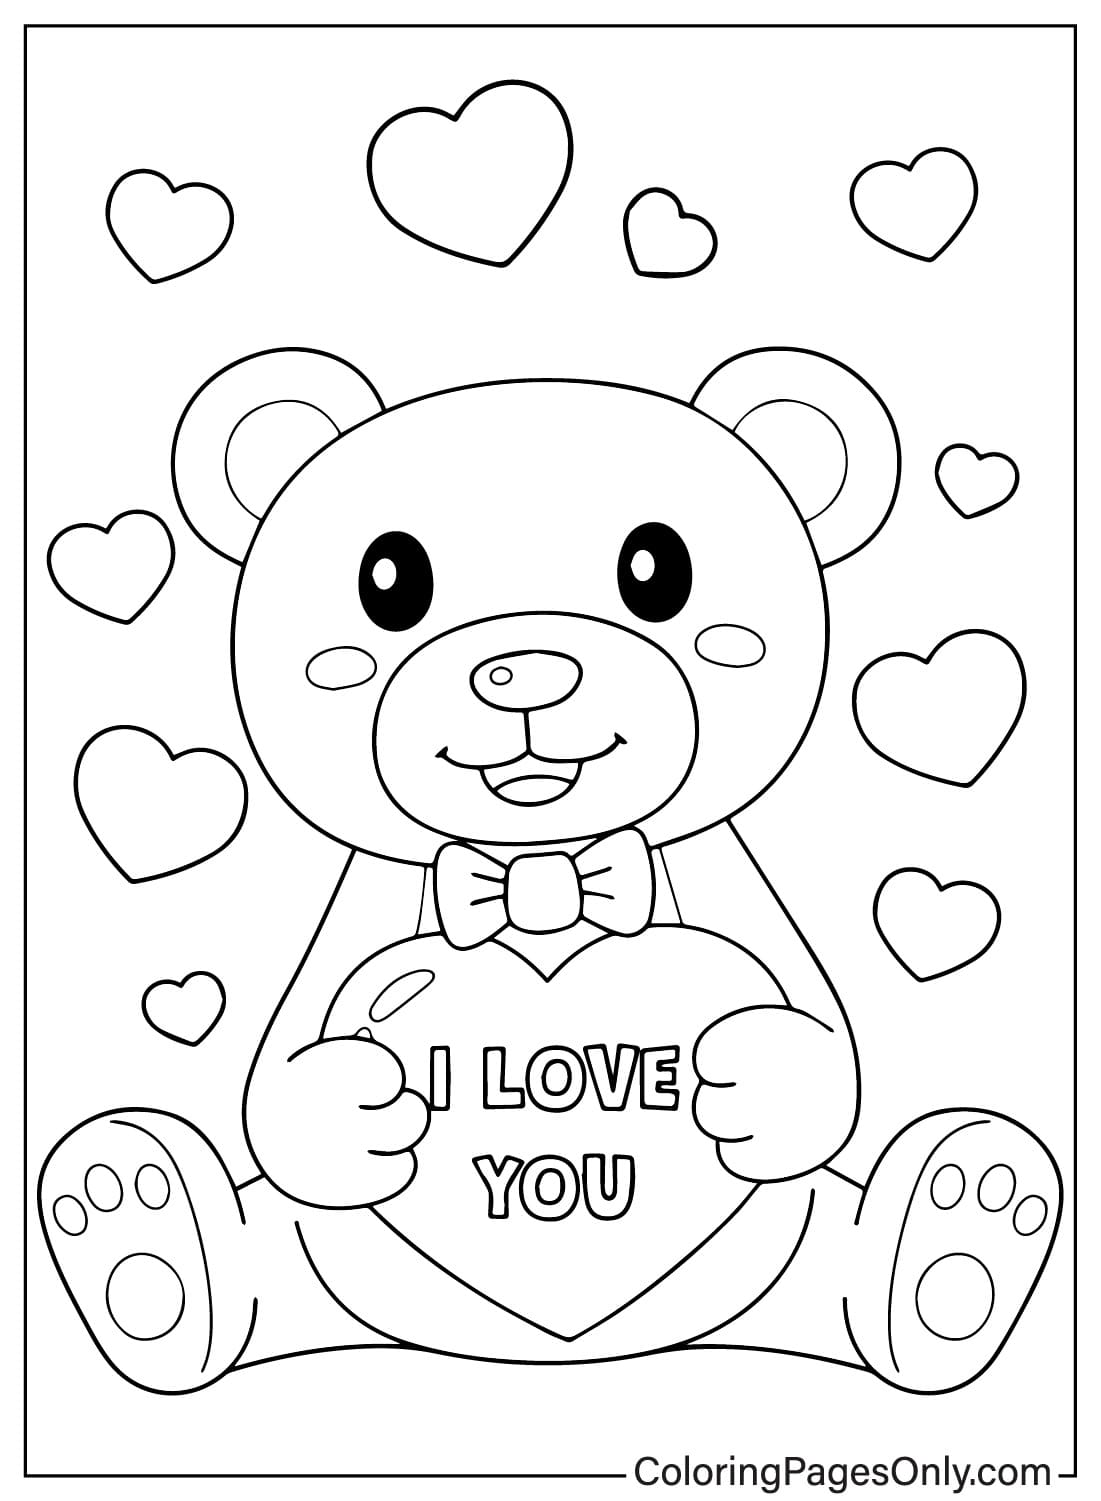 泰迪熊着色页可从泰迪熊打印